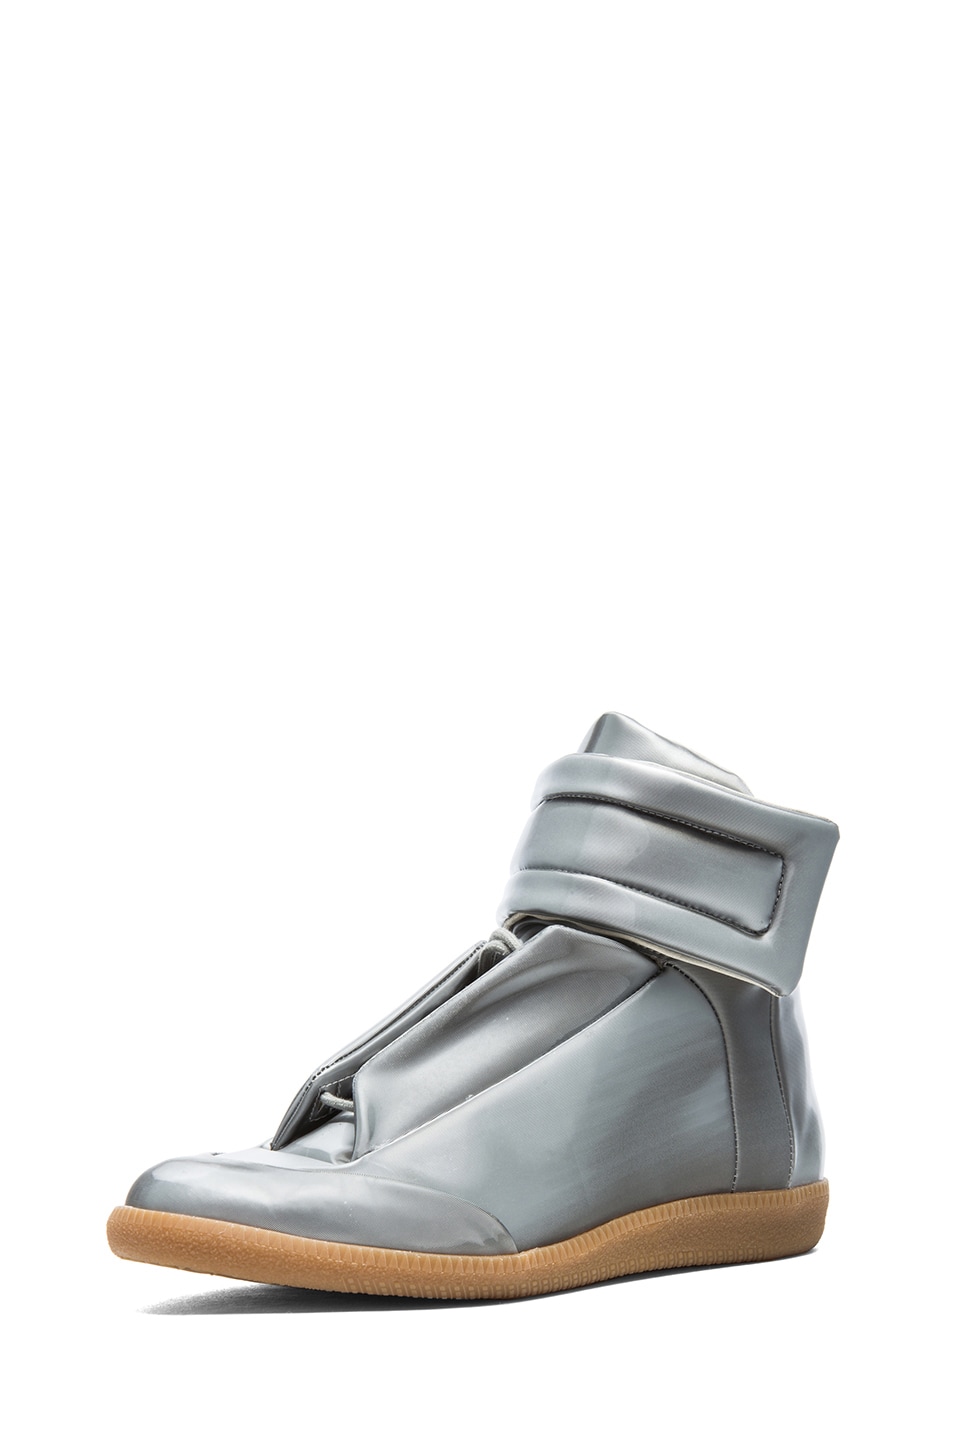 Maison Margiela Future Metallic Polyurethane High Top Sneakers in ...